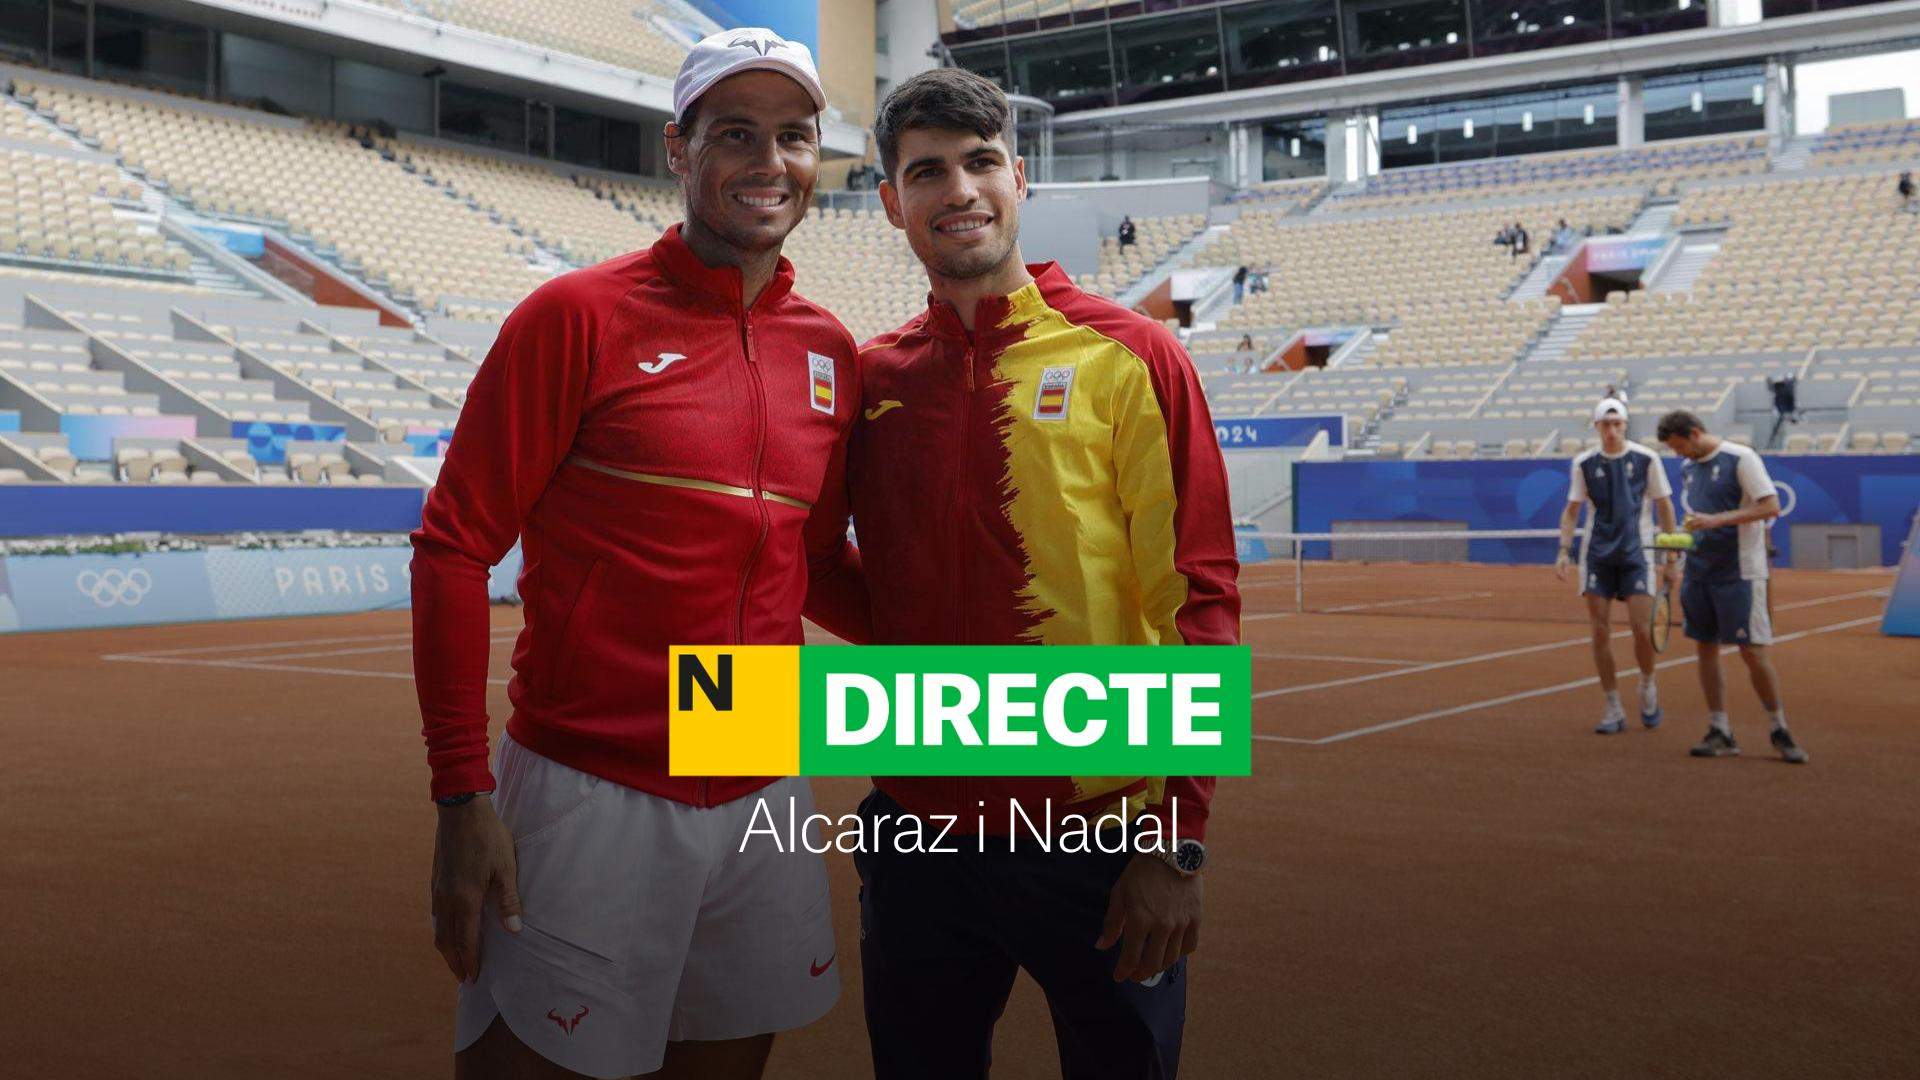 González/Molteni - Alcaraz/Nadal en los Juegos Olímpicos de París 2024, DIRECTO | Debut en dobles